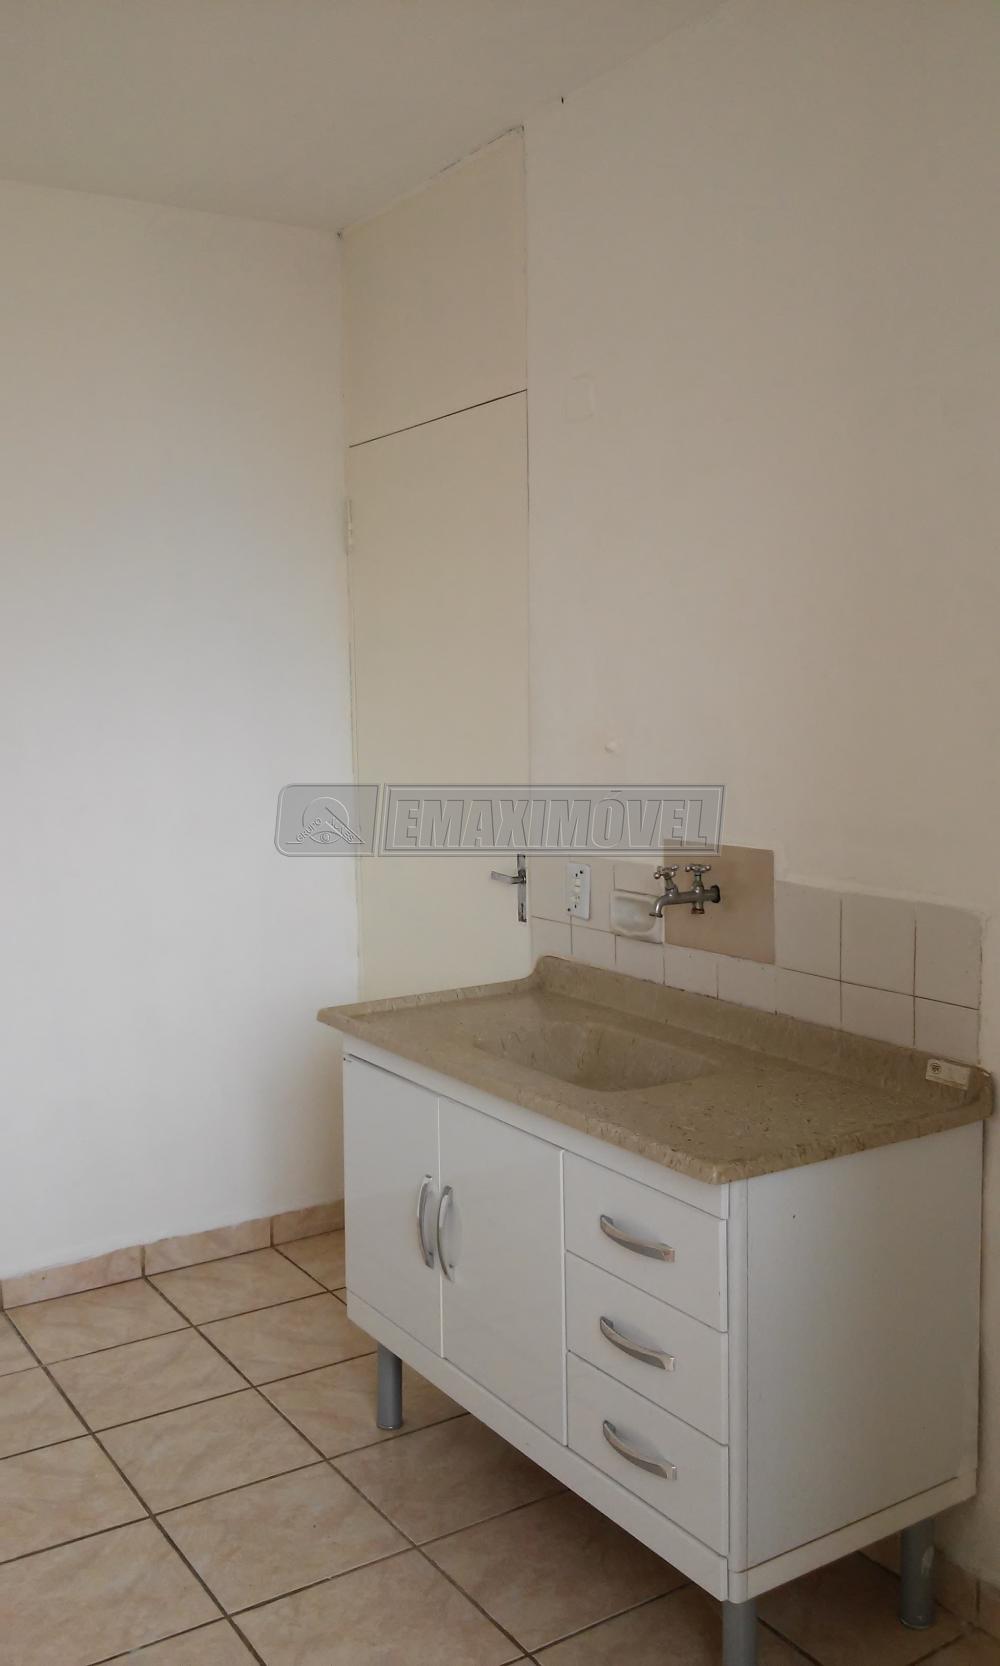 Alugar Apartamento / Padrão em Sorocaba R$ 700,00 - Foto 6